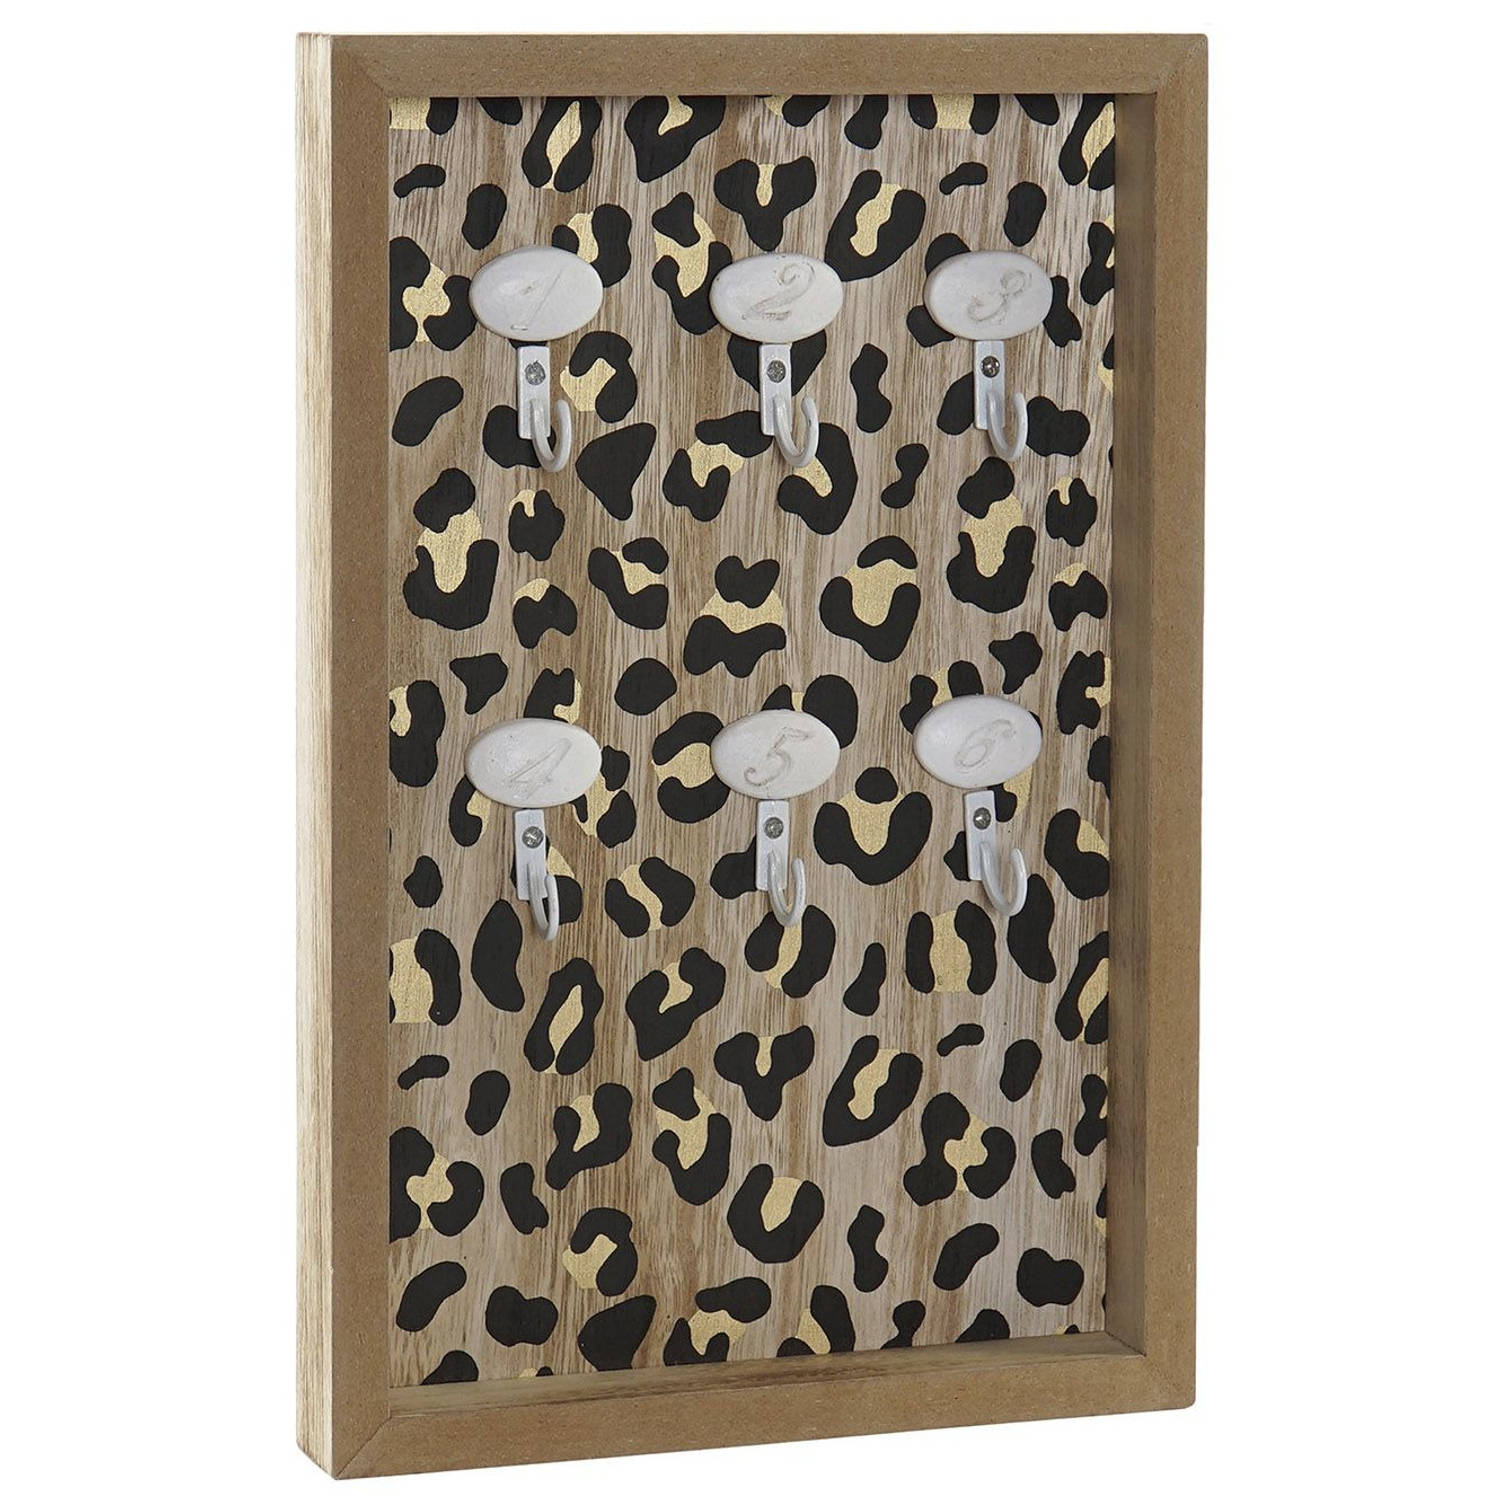 Houten sleutelkast luipaard print 20 x 30 cm - Sleutelkastjes